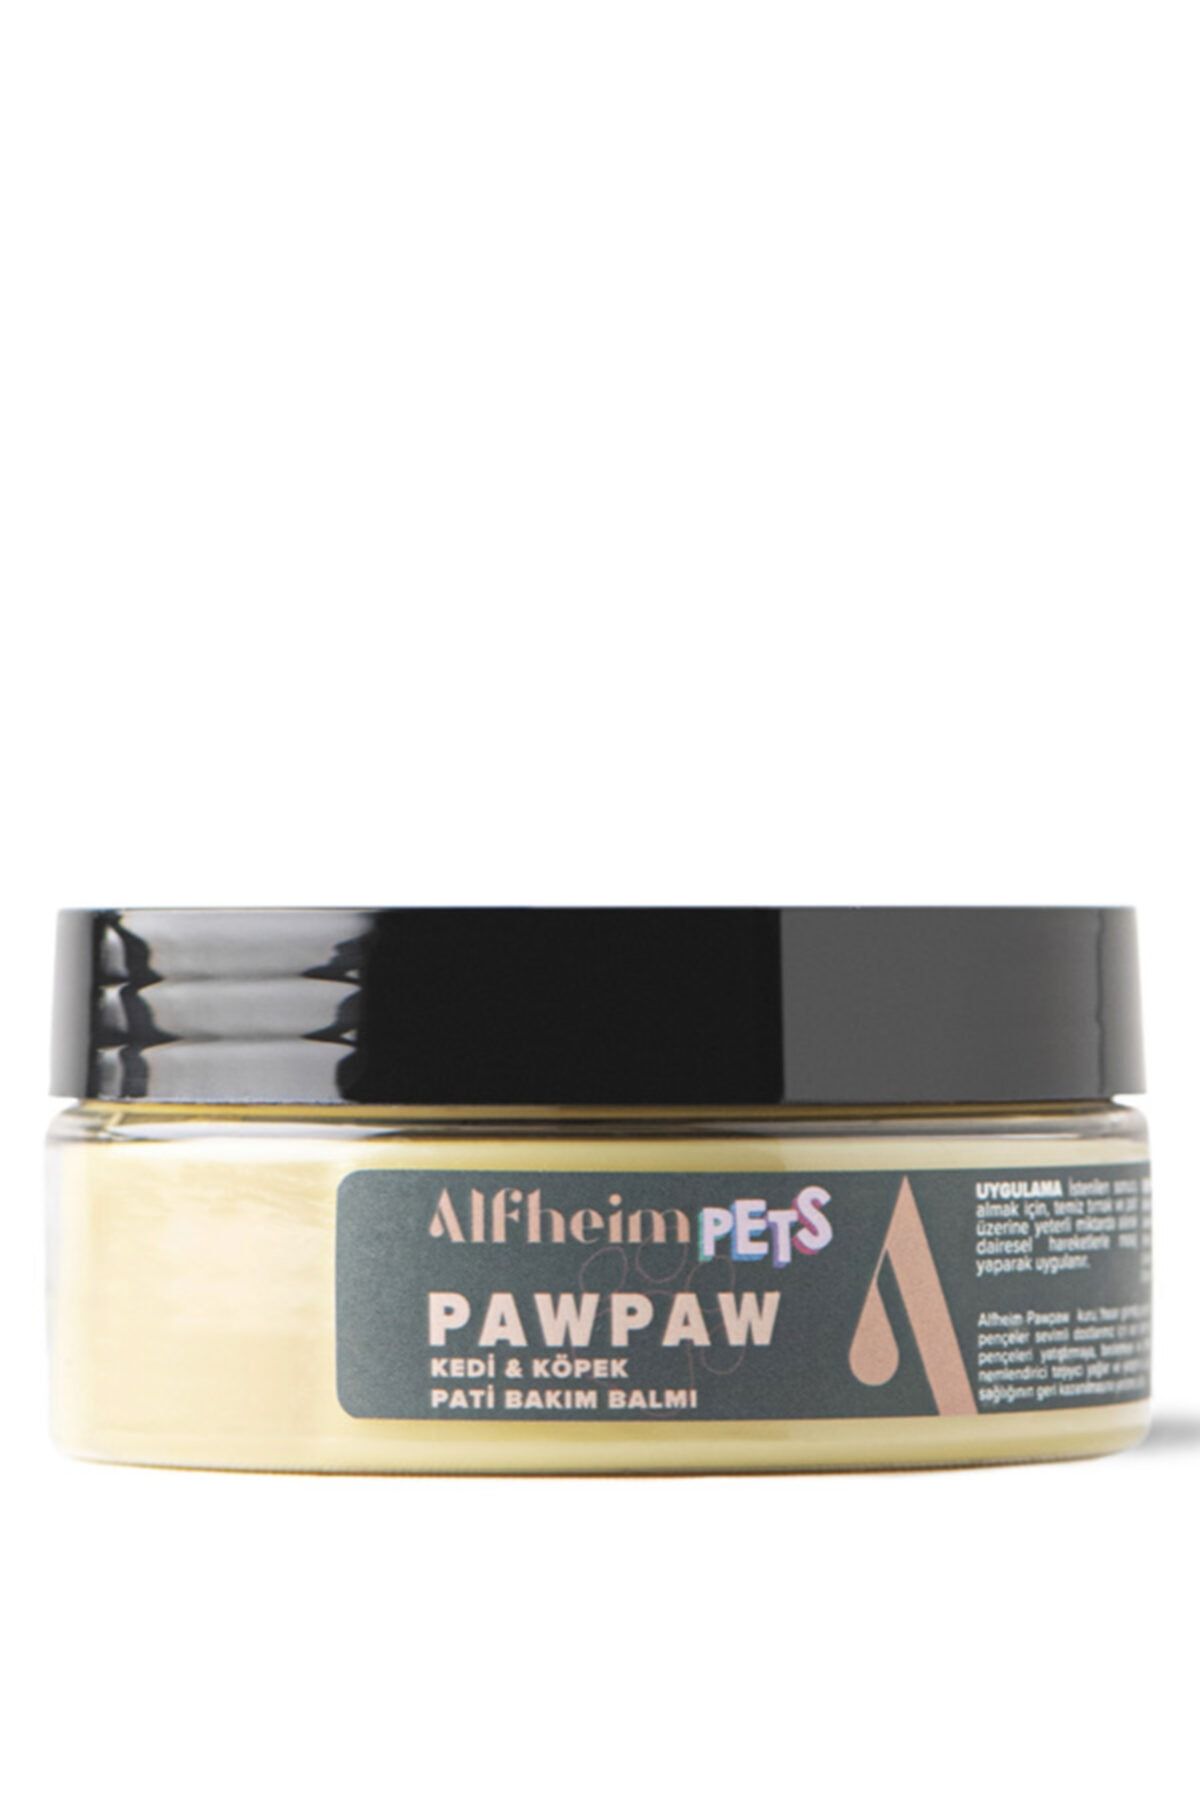 Alfheim Pawpaw Pati Bakım Balmı/ Kedi Köpek Pati Bakımı/ Hasarlardan Korur/ Iyileşmeyi Destekler/ 150 Ml